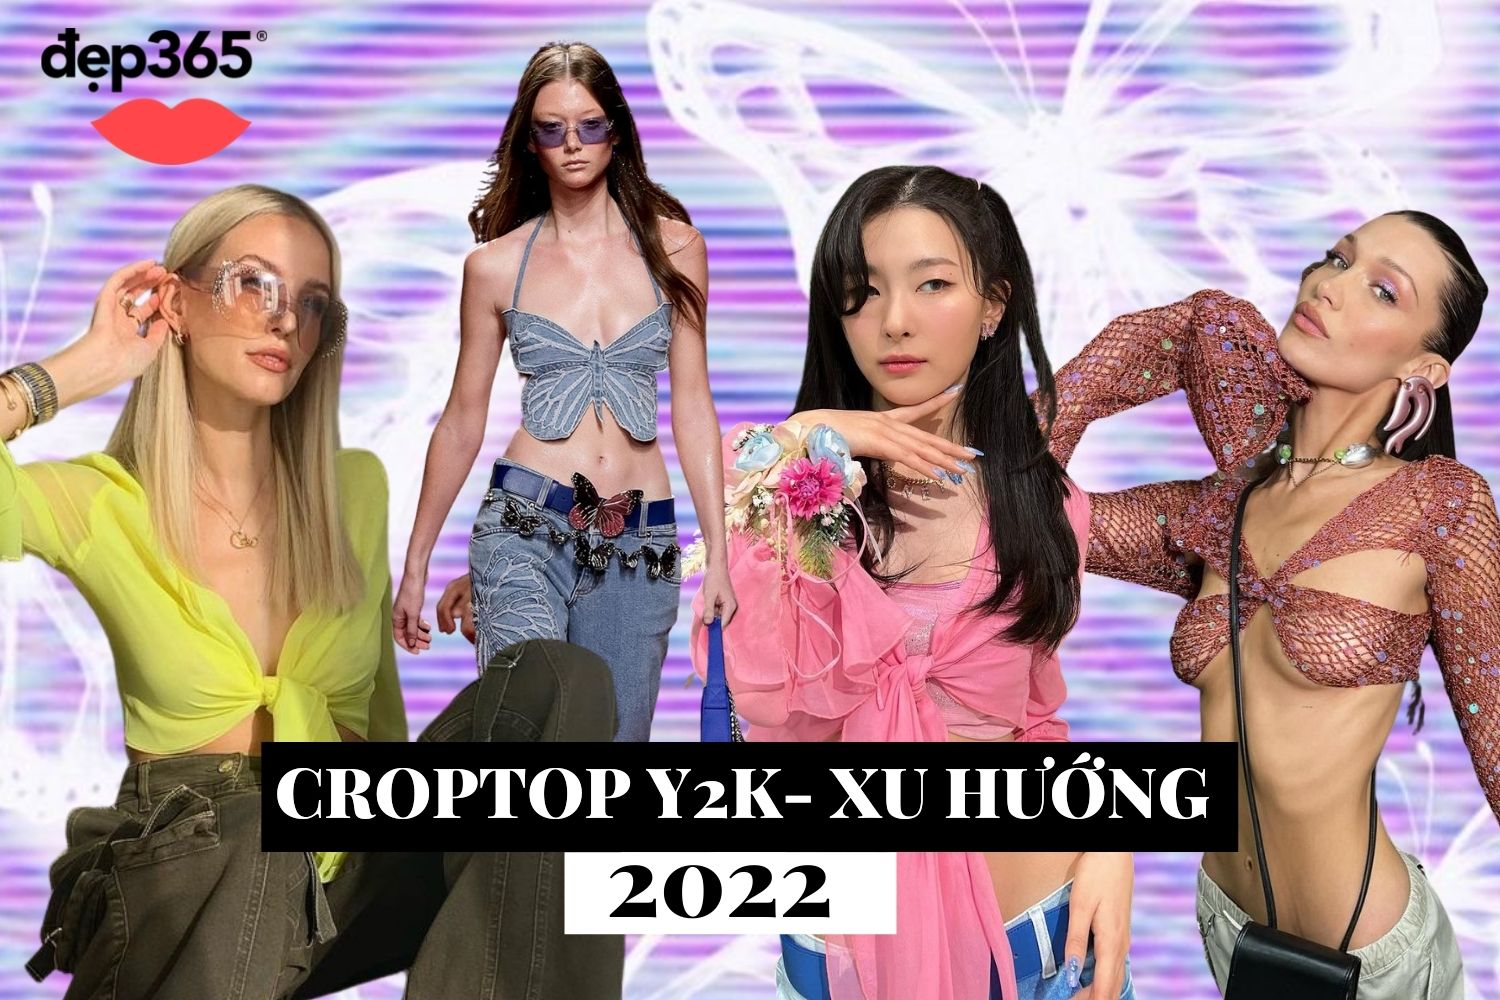 Croptop Y2K 2022: Cuộc đụng độ nảy lửa của Blumarine và Coperni 2022